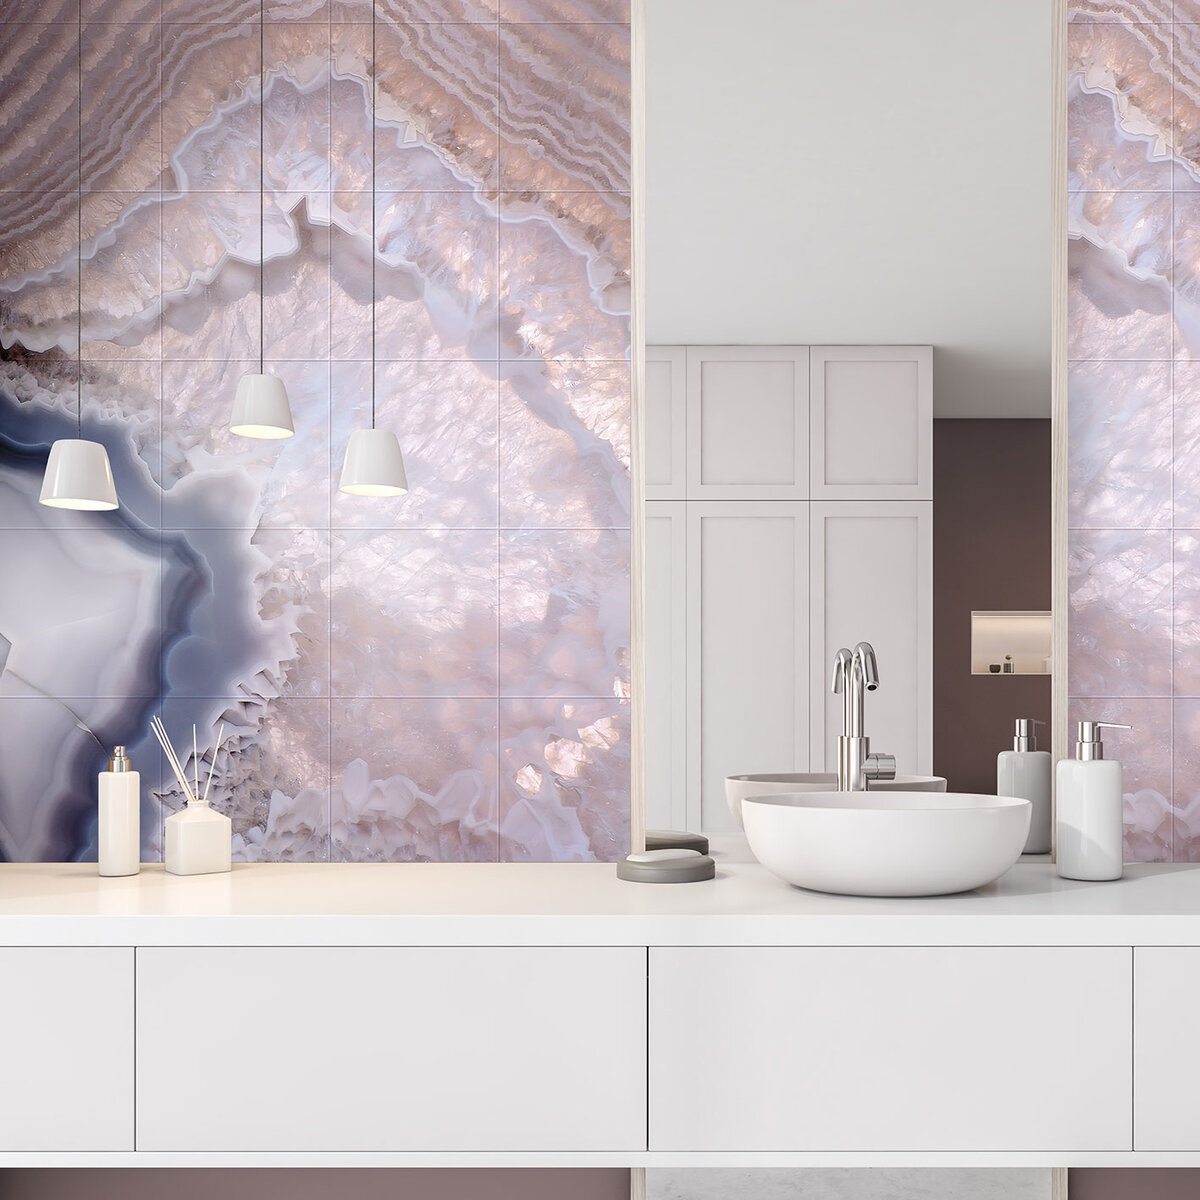 Ванная комната в современном стиле: идеи дизайна и оформления интерьера с 50+ фото